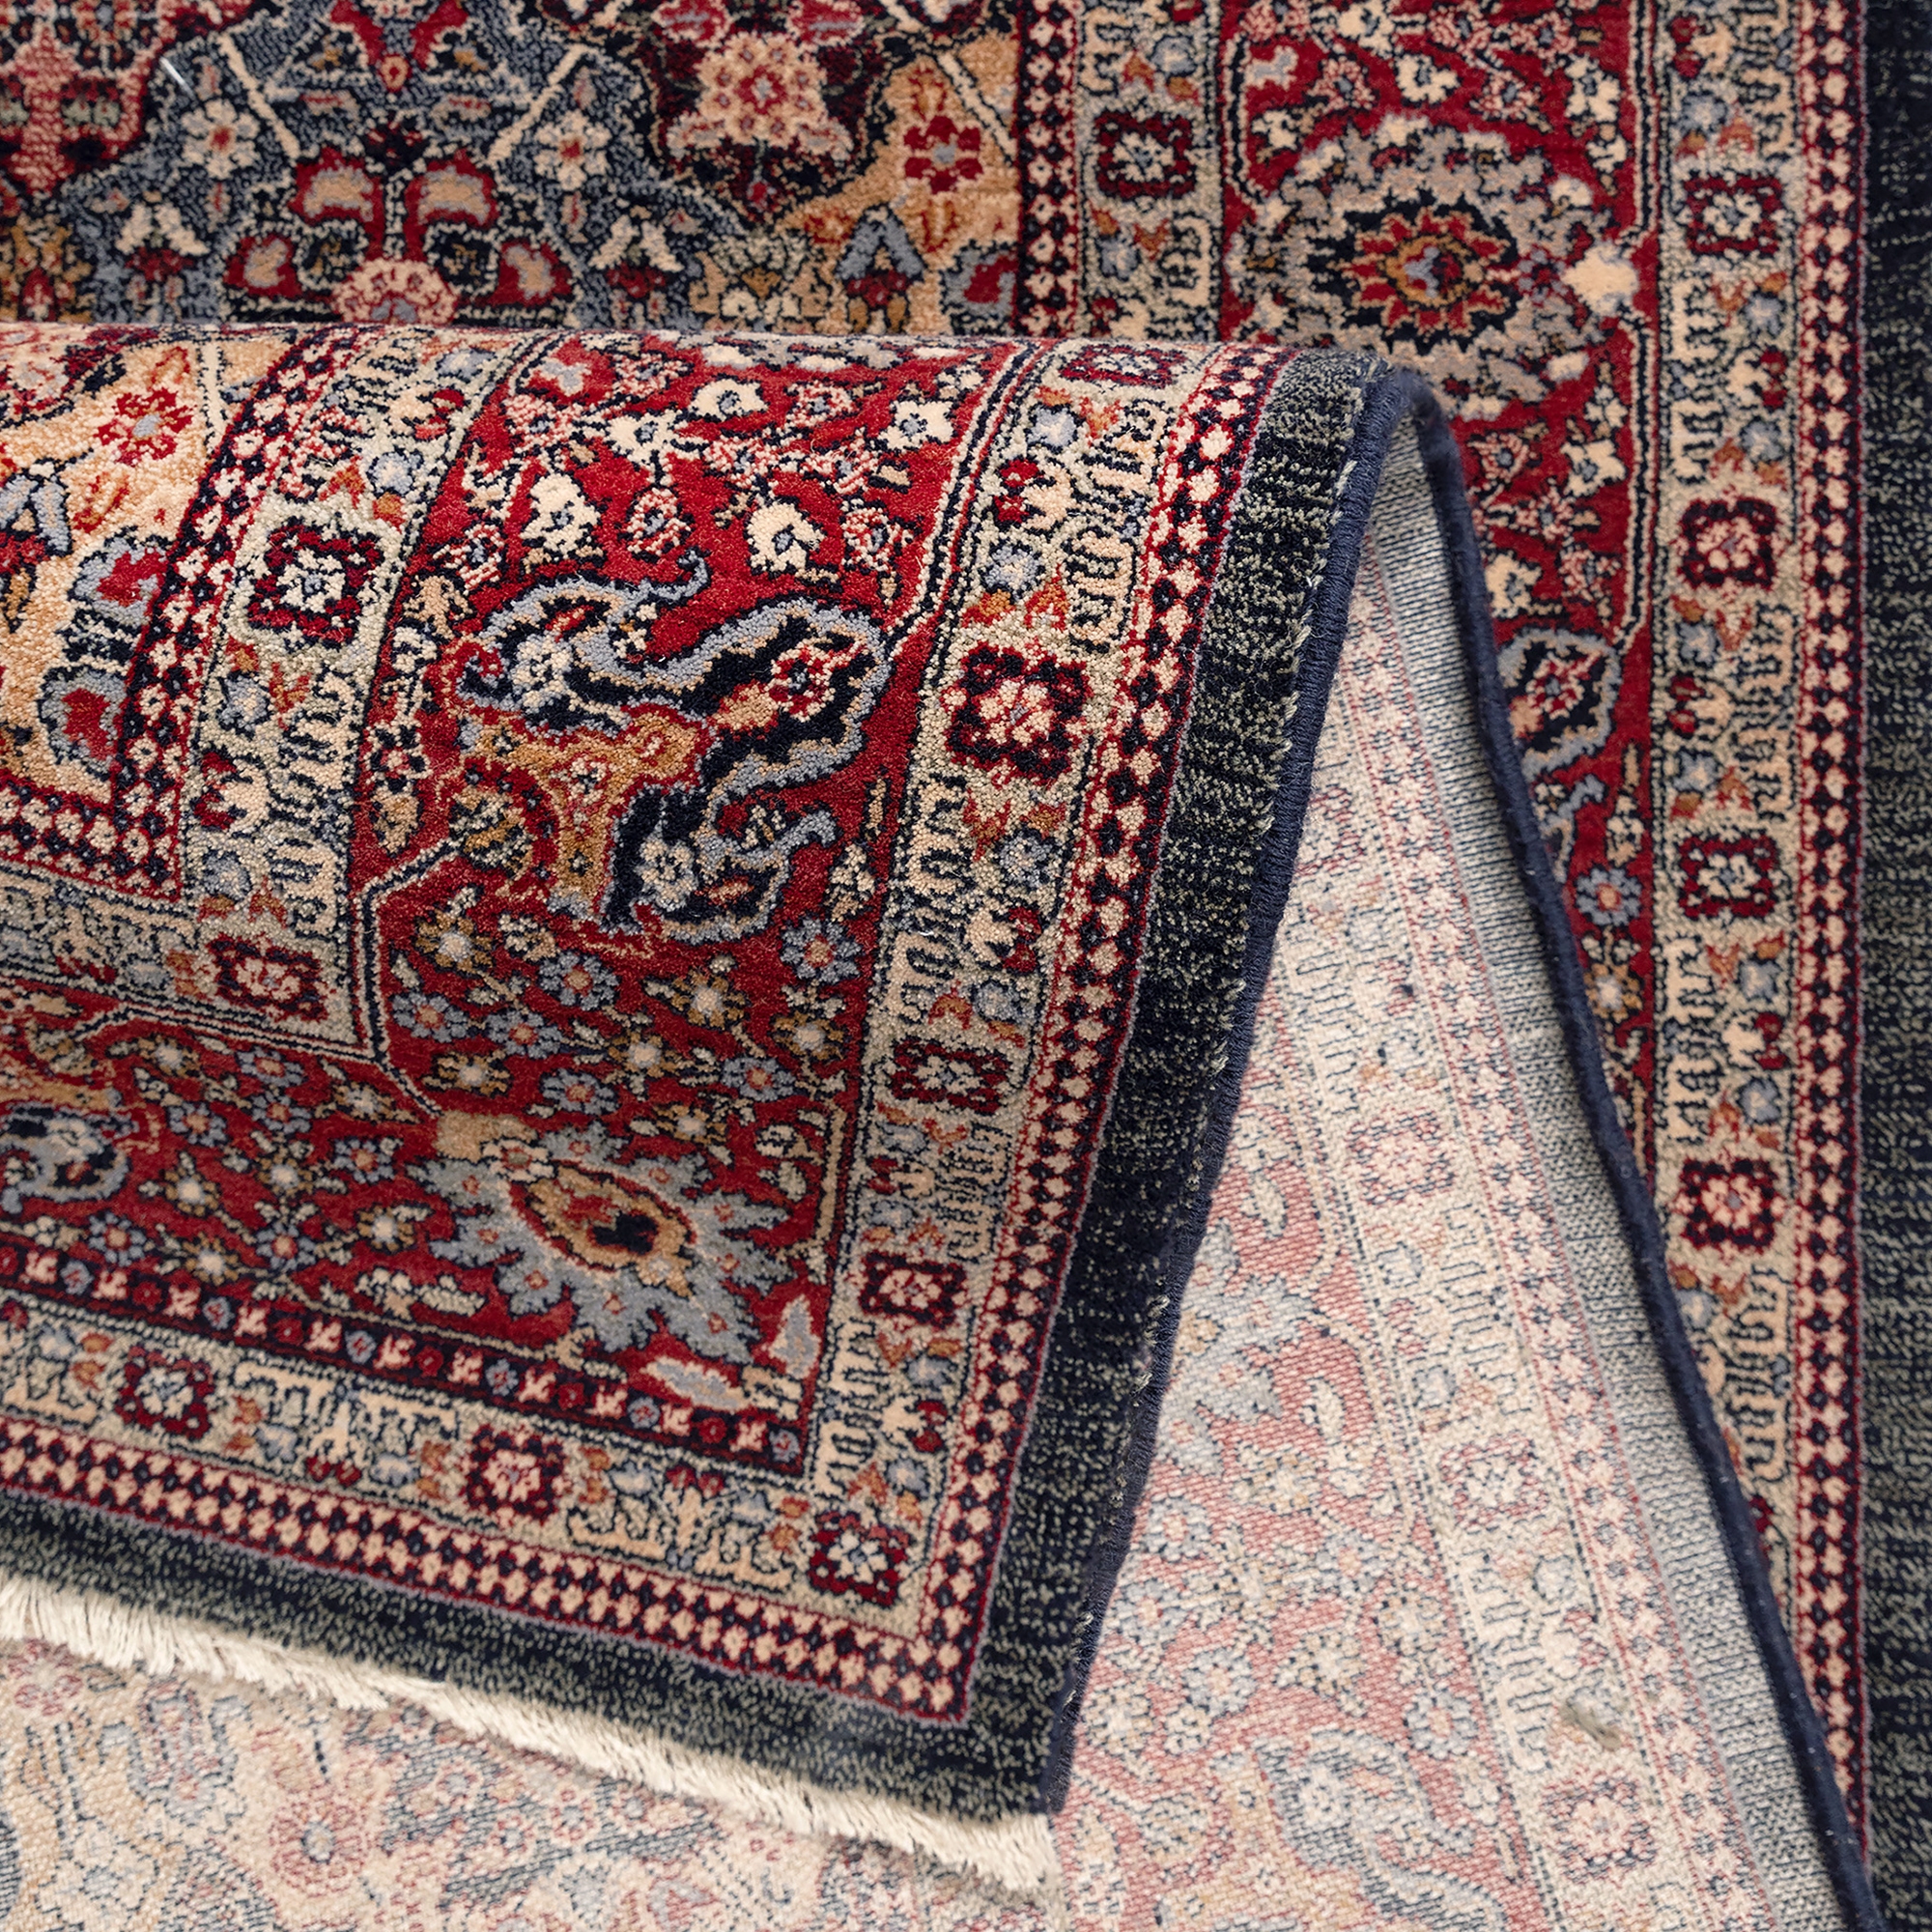 Covor living / dormitor Carpeta Antique 75761-53511, 120 x 145 cm, lana,  maro + rosu + bej + albastru, dreptunghiular